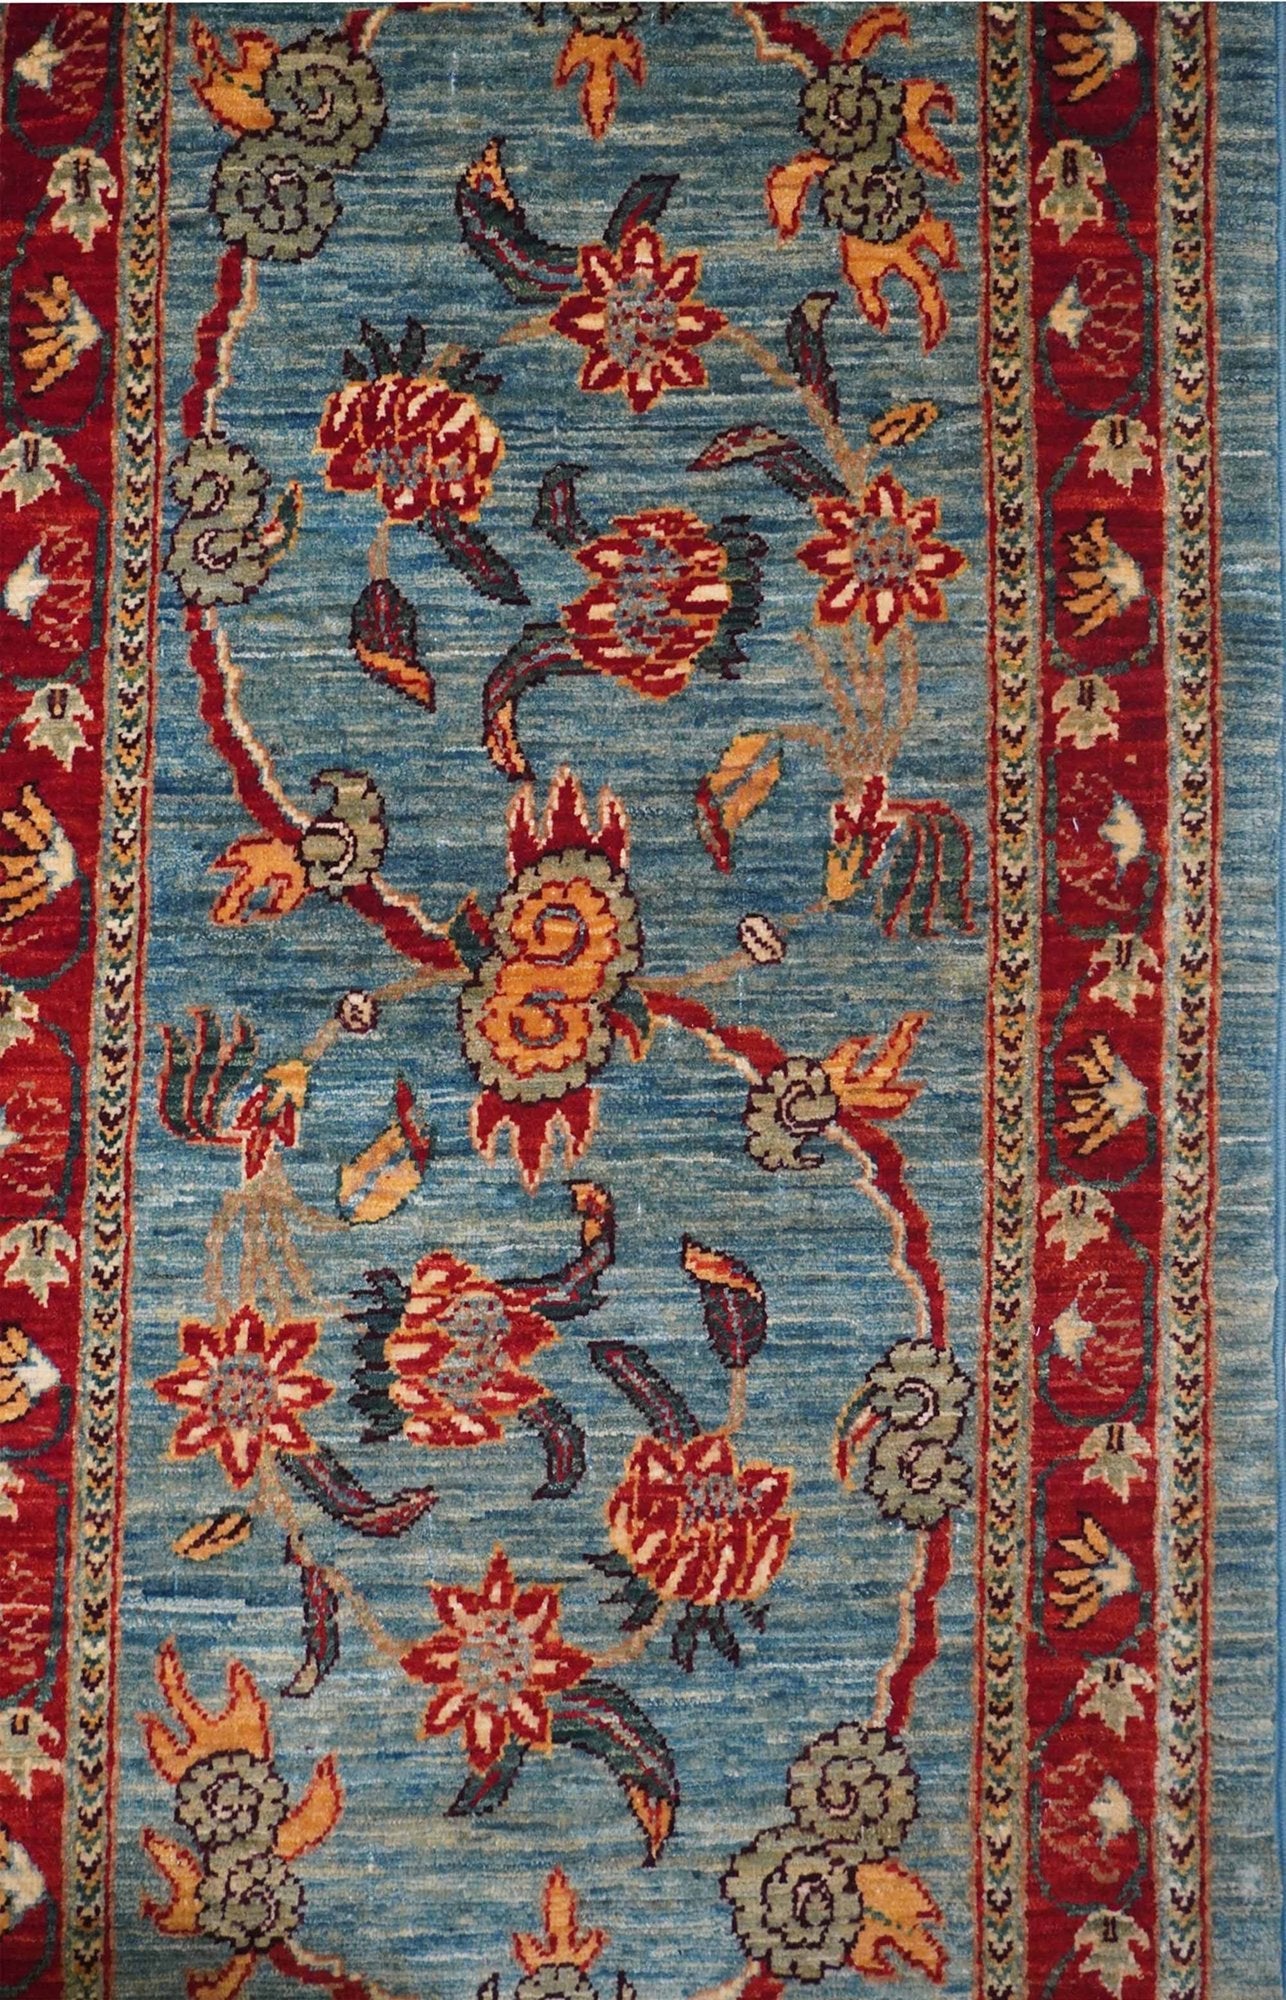 Moghul Handwoven Traditional Rug, J64478